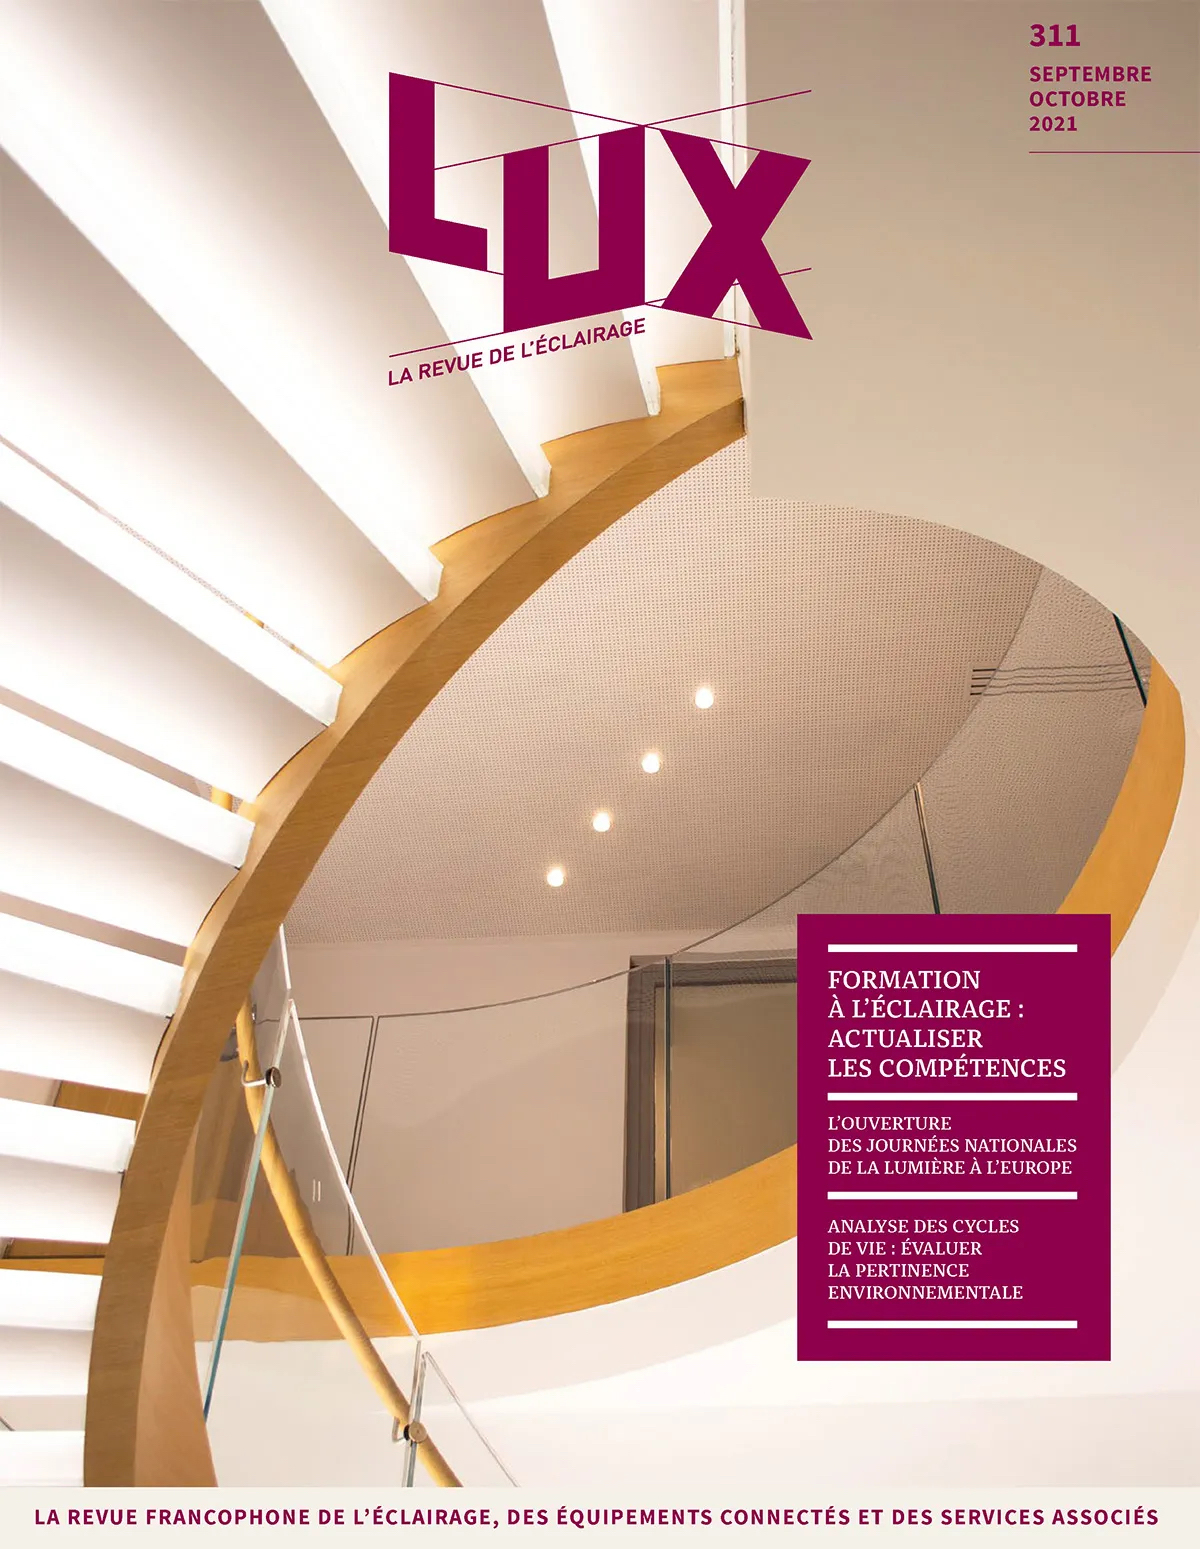 LUX-311-septembre-octobre-2021-couverture-Copyright-Societe-LUX